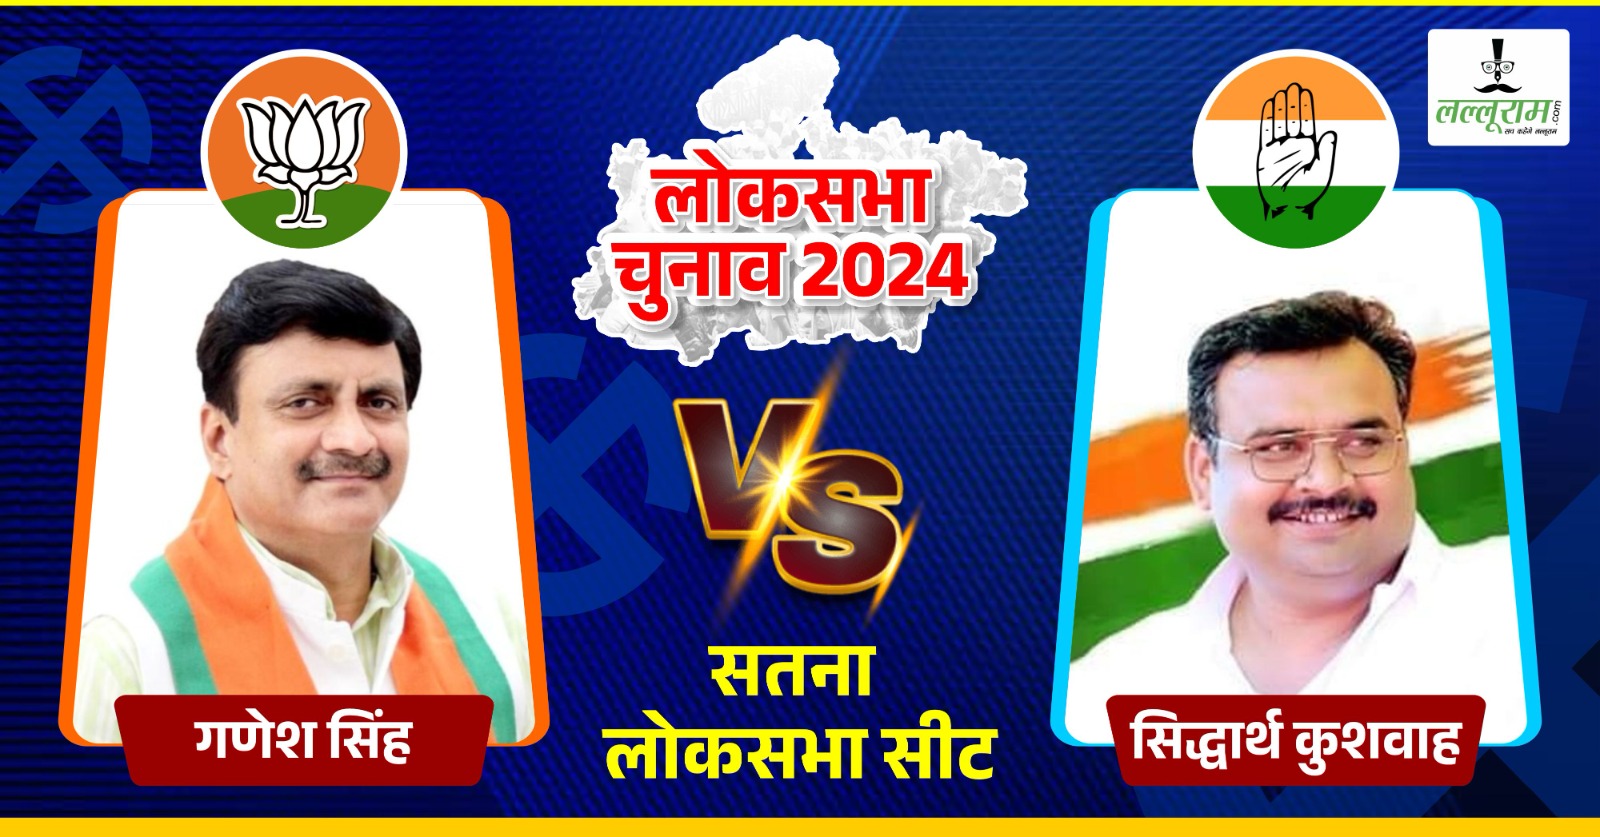 LokSabha Election 2024 Phase 2: जब विधानसभा चुनाव में बेटे ने लिया था पिता की हार का बदला, इस बार भी दोनों प्रत्याशी मैदान में, BSP के नारायण त्रिपाठी बिगाड़ेंगे खेल ?